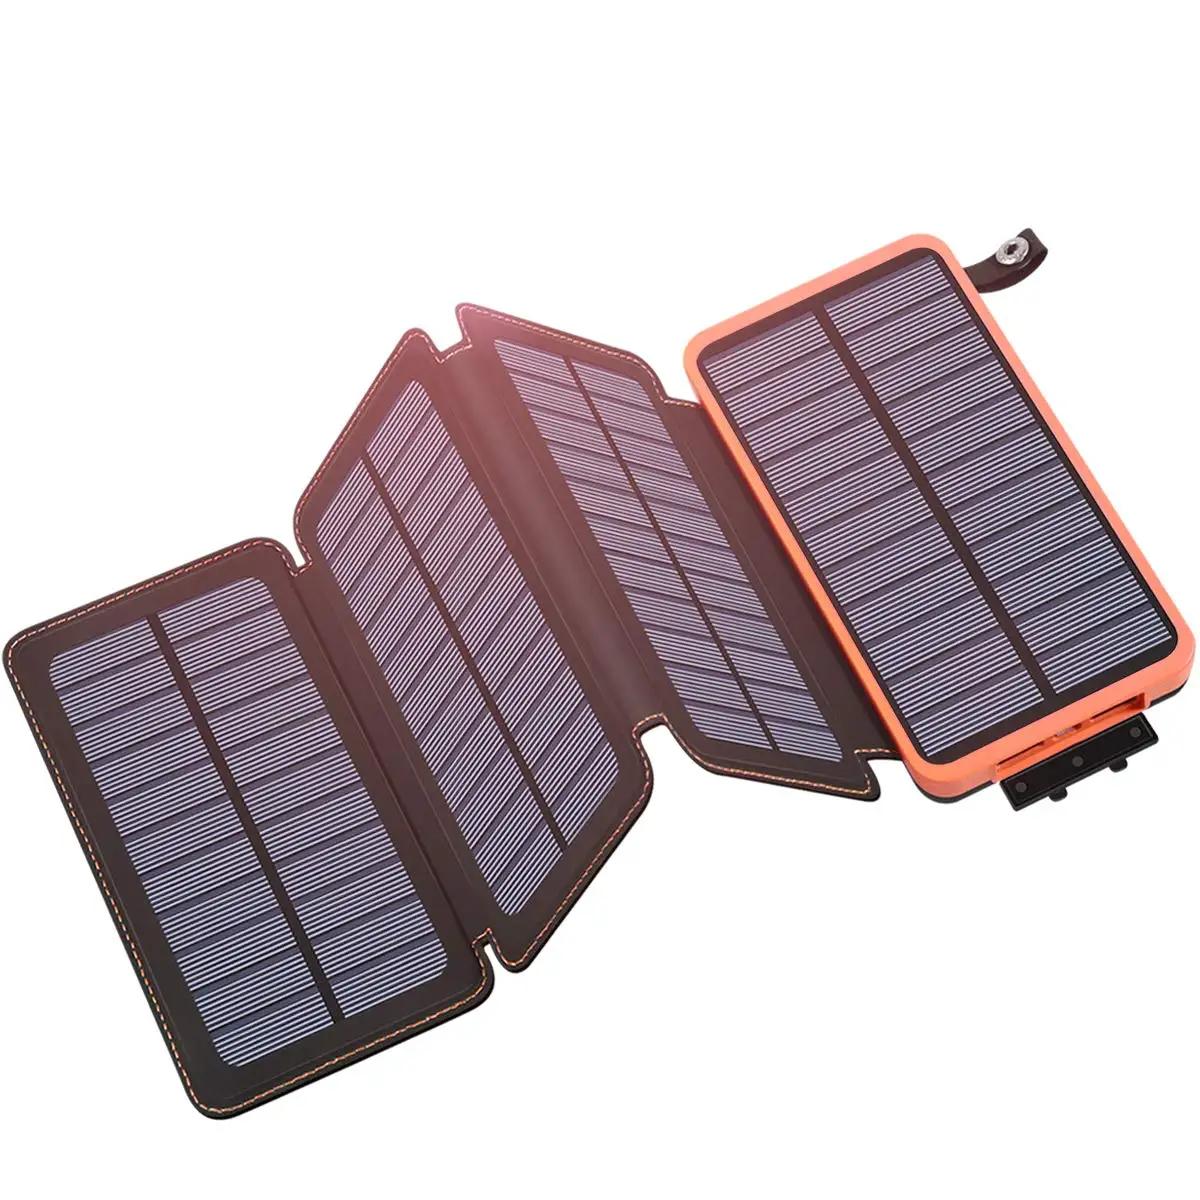 

Factory hot selling folding solar phone power bank charger solar powerbank 20000mah 30000mah